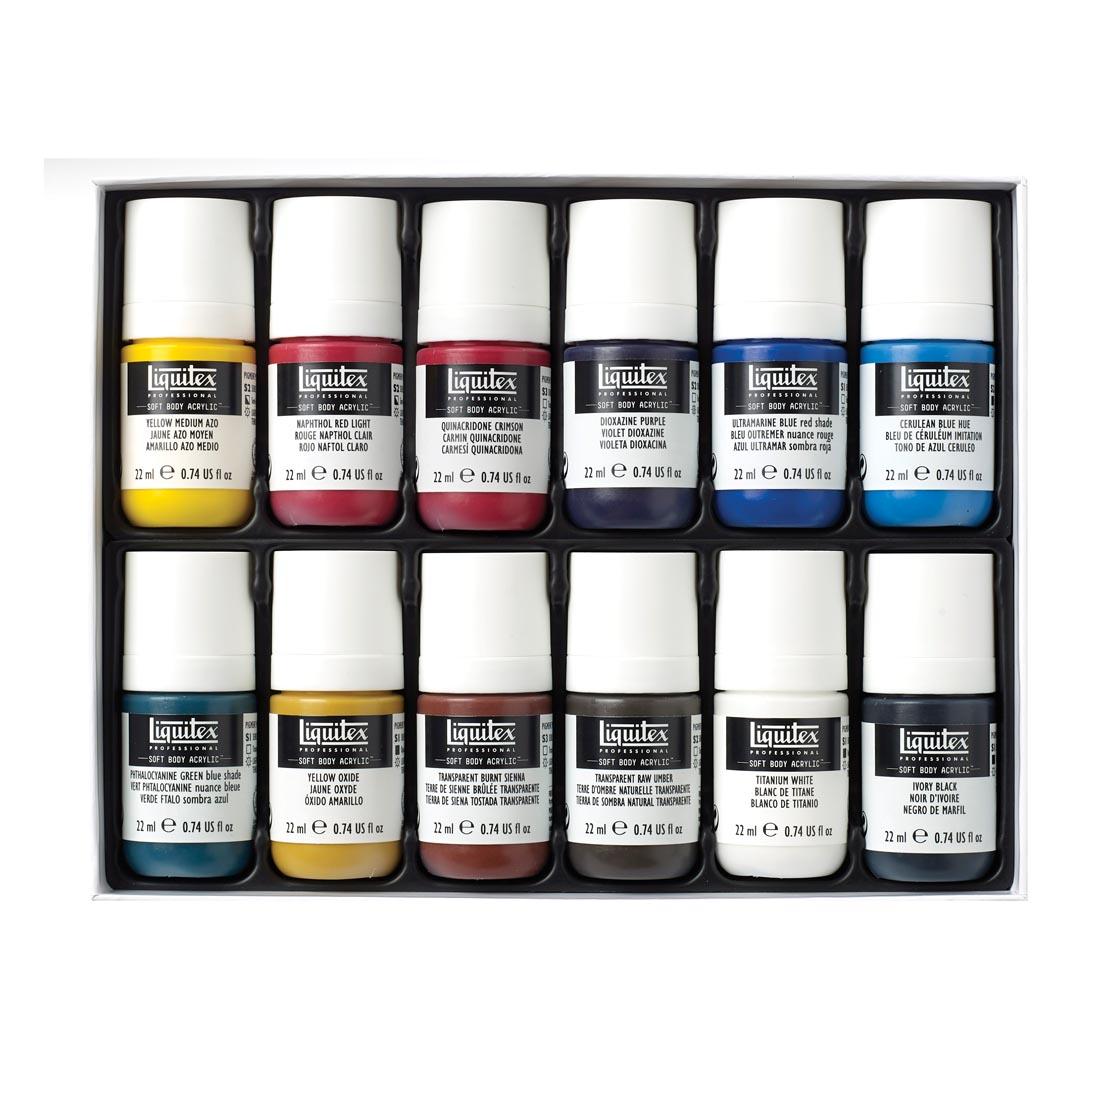 Contents of Liquitex Soft Body Professional Acrylic Essentials Set, 12 jars